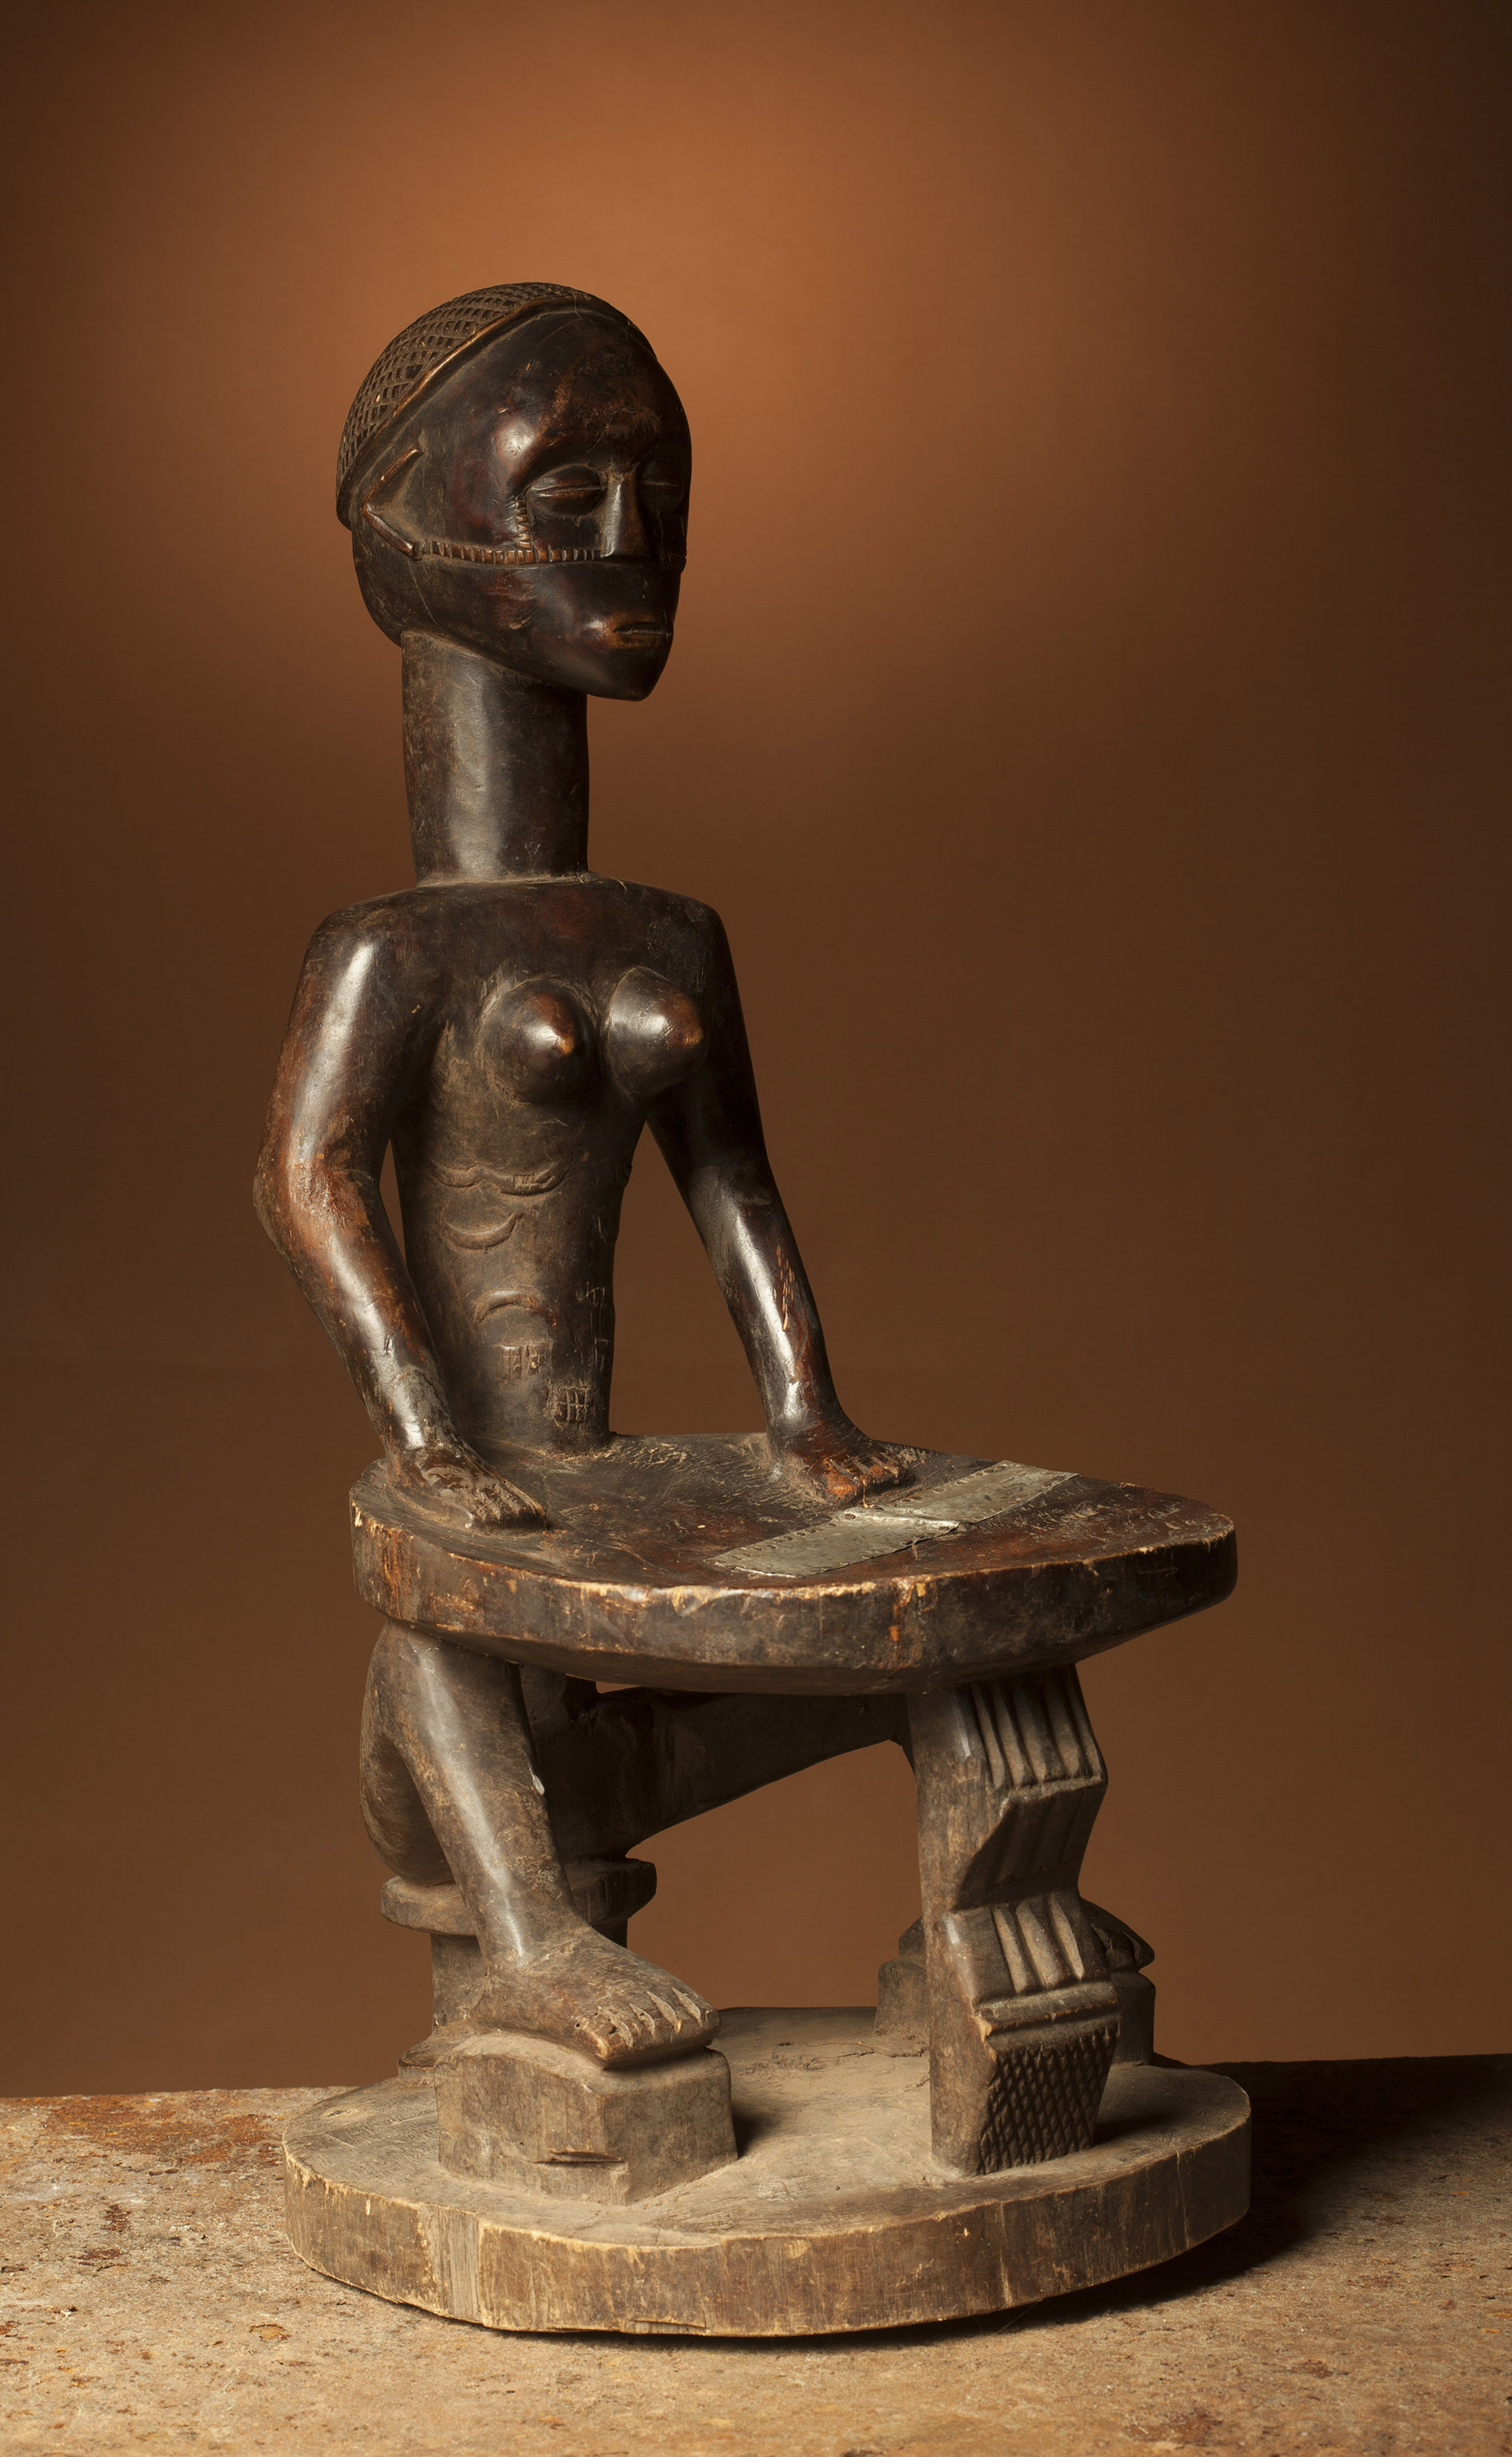 TABWA ( femme à siège), d`afrique : R.D.Congo, statuette TABWA ( femme à siège), masque ancien africain TABWA ( femme à siège), art du R.D.Congo - Art Africain, collection privées Belgique. Statue africaine de la tribu des TABWA ( femme à siège), provenant du R.D.Congo, 1741:Très beau siège de chef Tabwa,fait en une seule pièce. 1ere moitié du 20eme sc.Il représente une femme  assise qui soutient un plateau posé sur ses genoux.Son corps est scarifié (col Leon Verwilghen)

Buitengewoon mooie chef Tabwa stoel. Hij stelt een zittende vrouw voor die een zitblad vasthoud en het met beide knieën ondersteunt. Het lichaam is gesculpteerd met scarificaties.Eerste helft 20ste eeuw. (Col. Léon Verwilghen)
. art,culture,masque,statue,statuette,pot,ivoire,exposition,expo,masque original,masques,statues,statuettes,pots,expositions,expo,masques originaux,collectionneur d`art,art africain,culture africaine,masque africain,statue africaine,statuette africaine,pot africain,ivoire africain,exposition africain,expo africain,masque origina africainl,masques africains,statues africaines,statuettes africaines,pots africains,expositions africaines,expo africaines,masques originaux  africains,collectionneur d`art africain